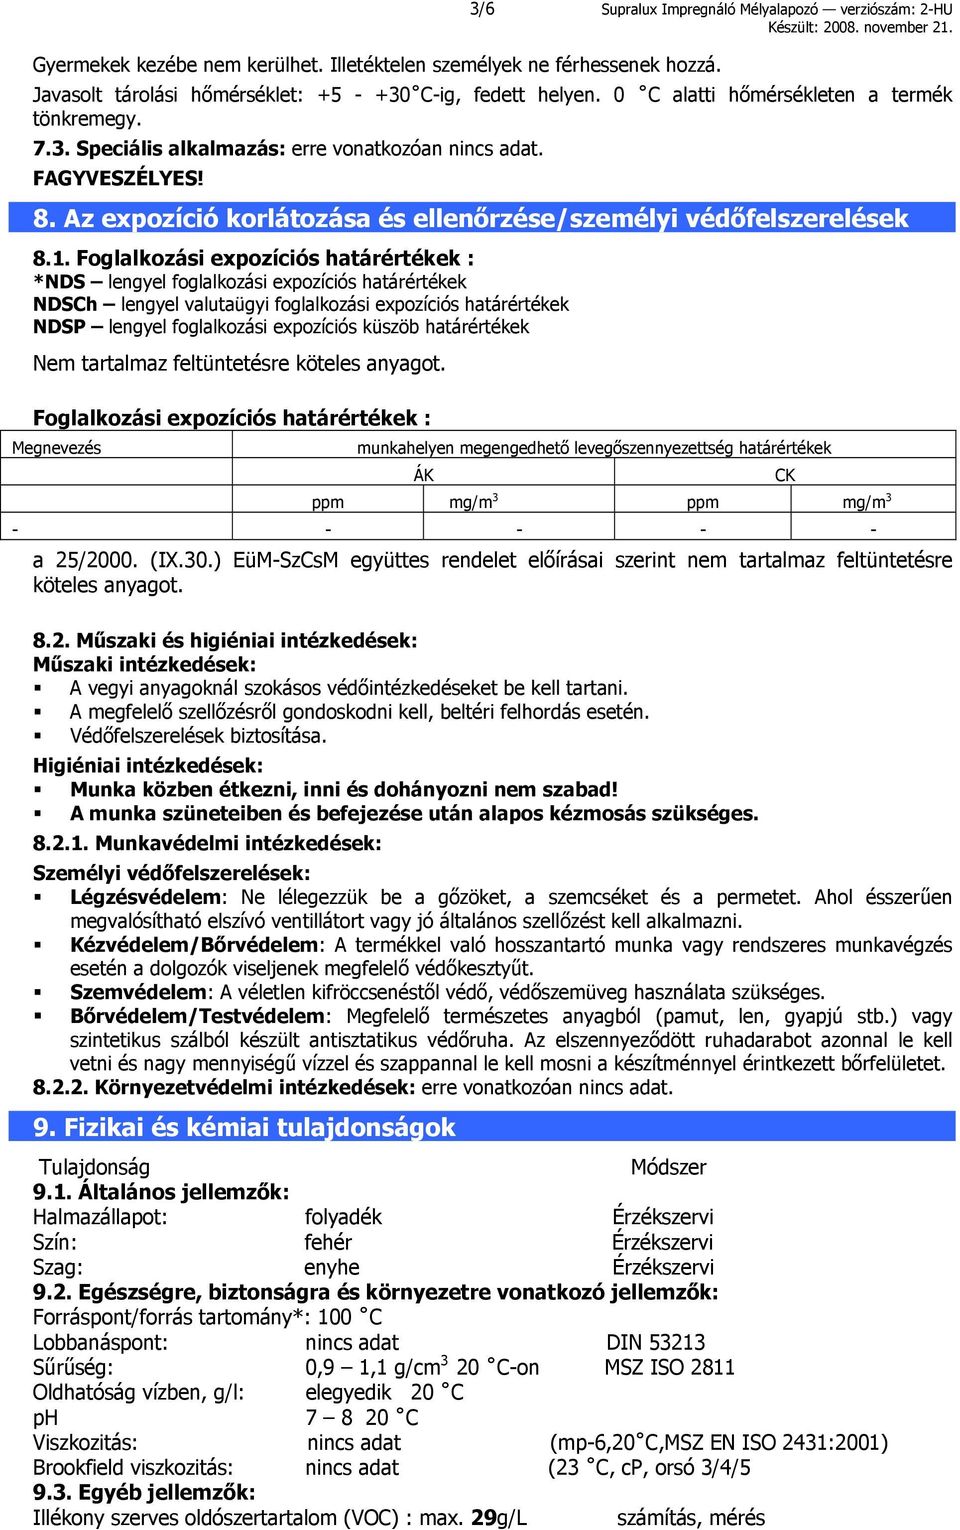 Foglalkozási expozíciós határértékek : *NDS lengyel foglalkozási expozíciós határértékek NDSCh lengyel valutaügyi foglalkozási expozíciós határértékek NDSP lengyel foglalkozási expozíciós küszöb